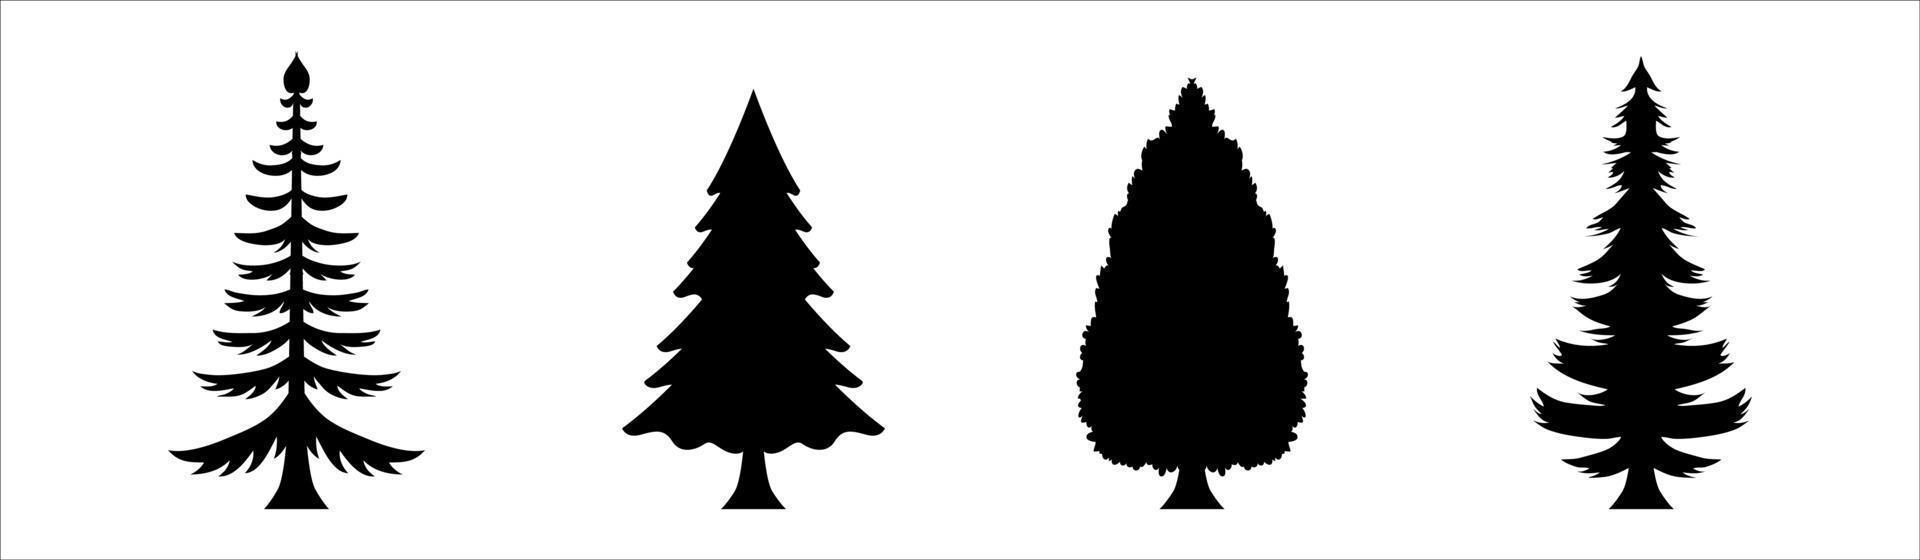 verschillende kerstboom silhouet vector